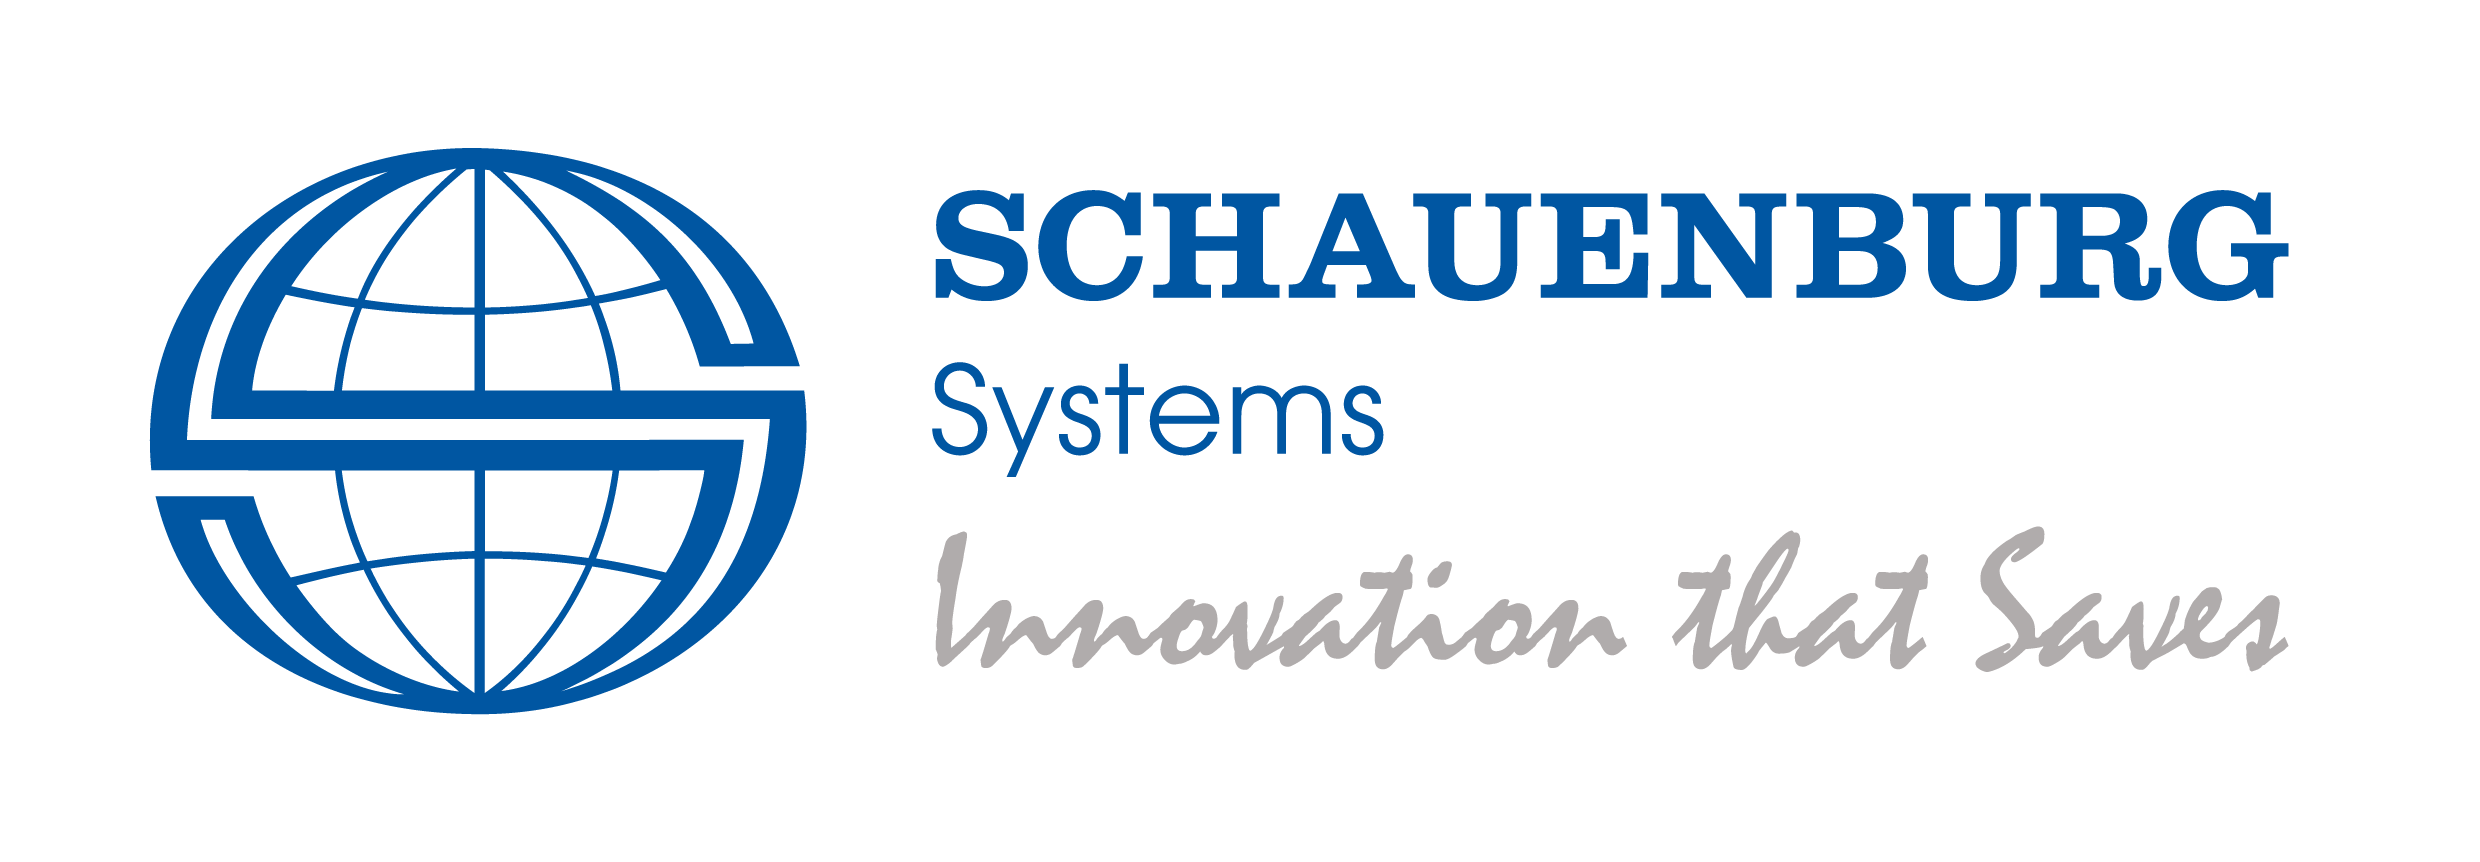 SCH207_Schauenburg Tagline Logo_Final